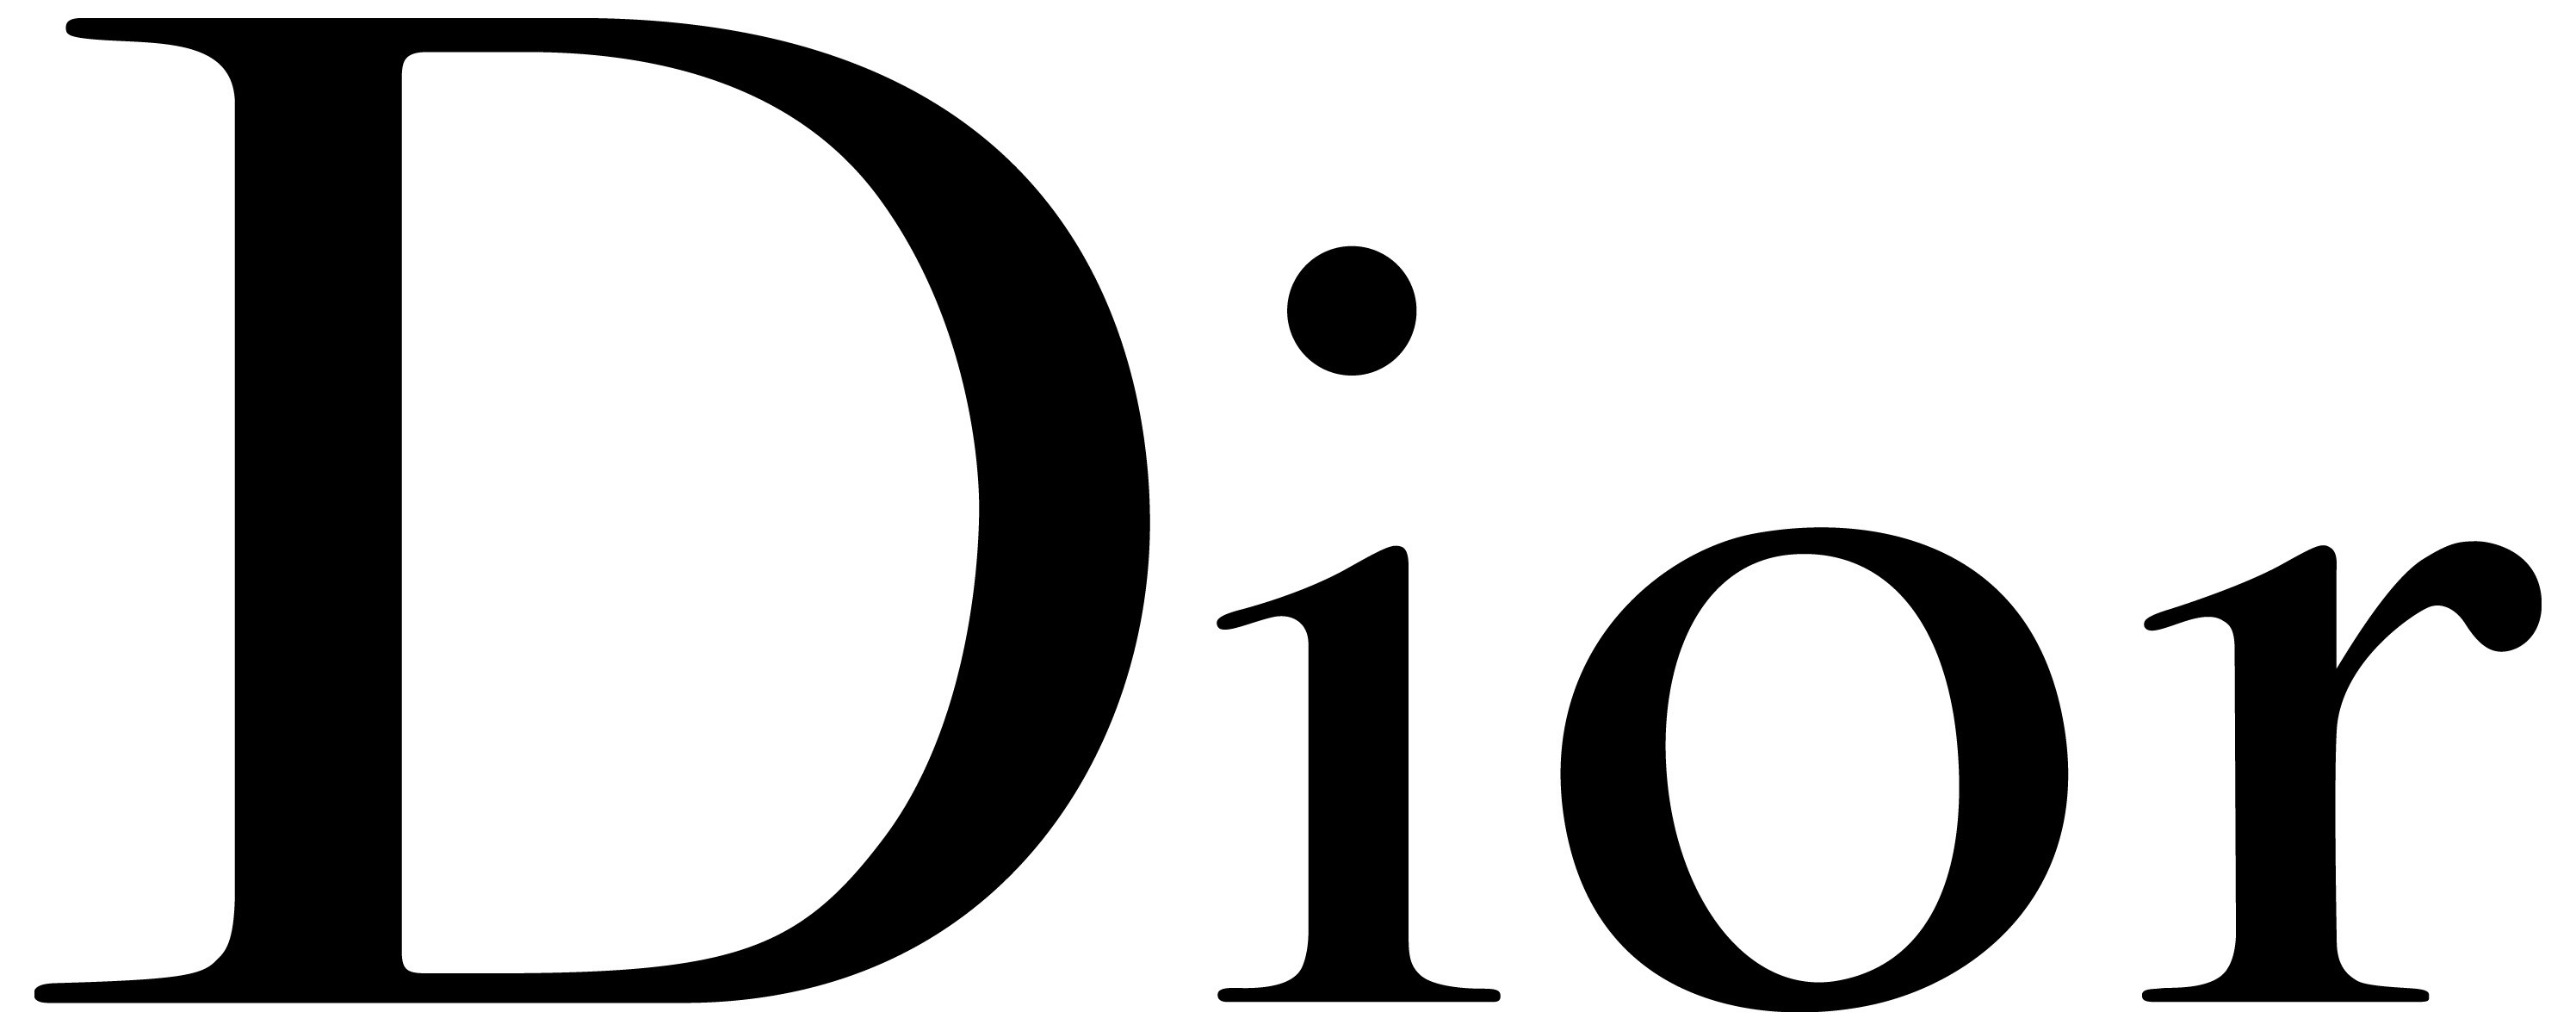 「Dior」LINE公式アカウント	鏡リュウジ